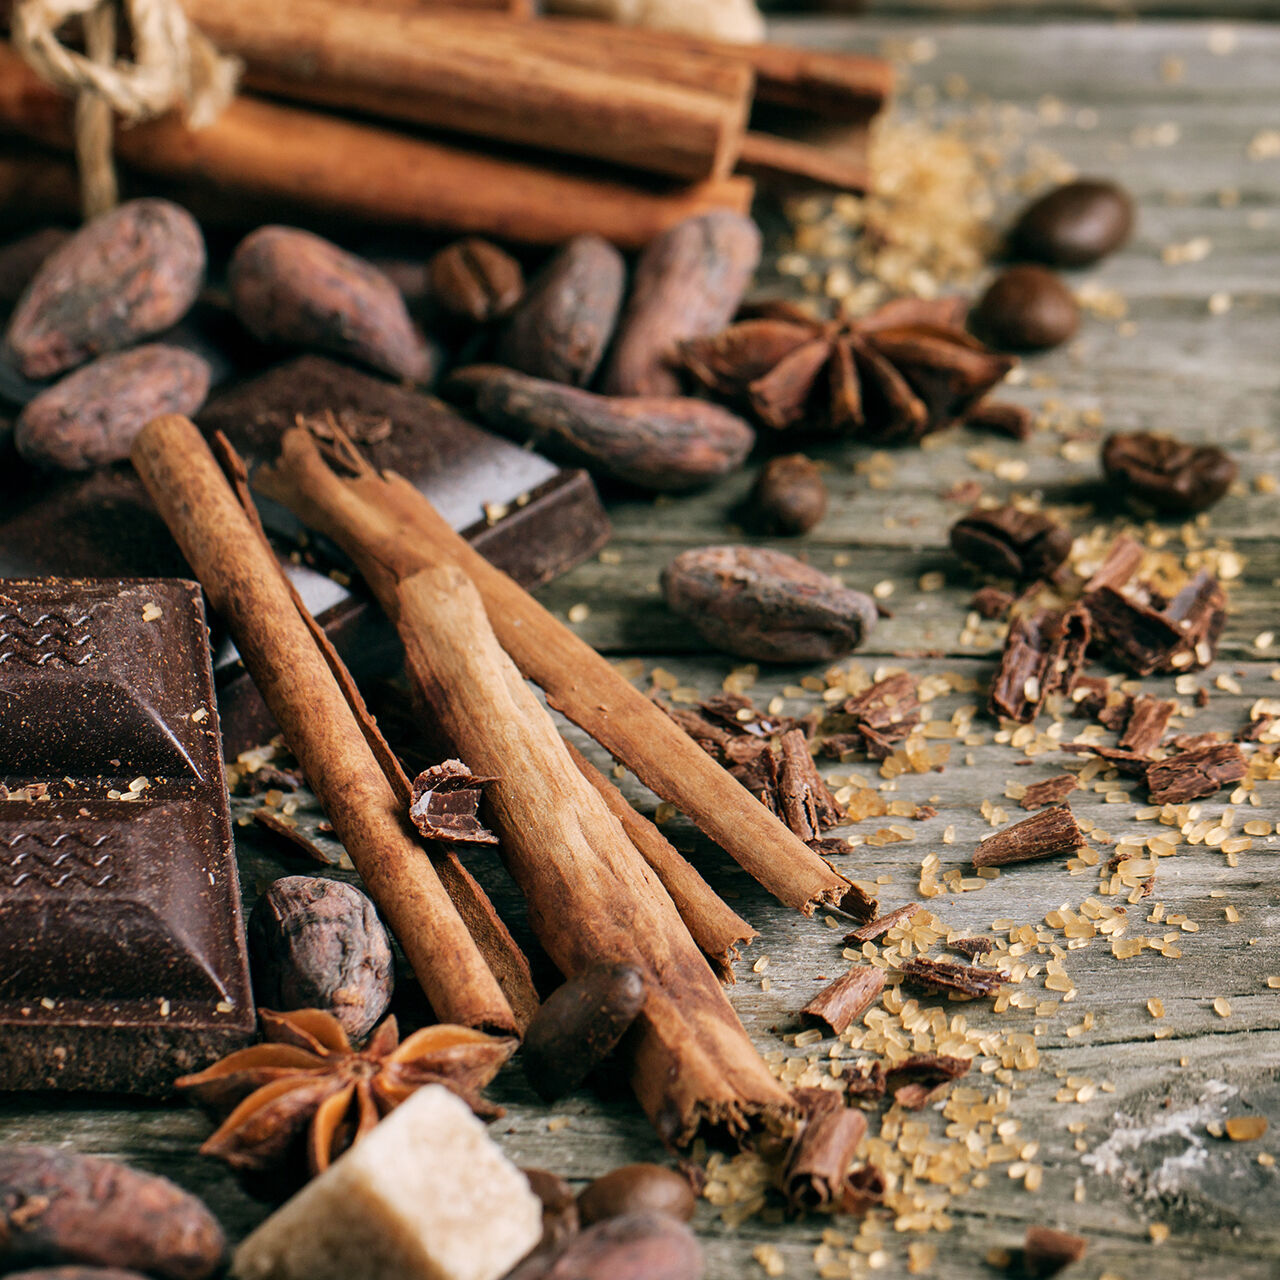 Molti dolci possono contenere il Nichel come cacao, cioccolato e cannella